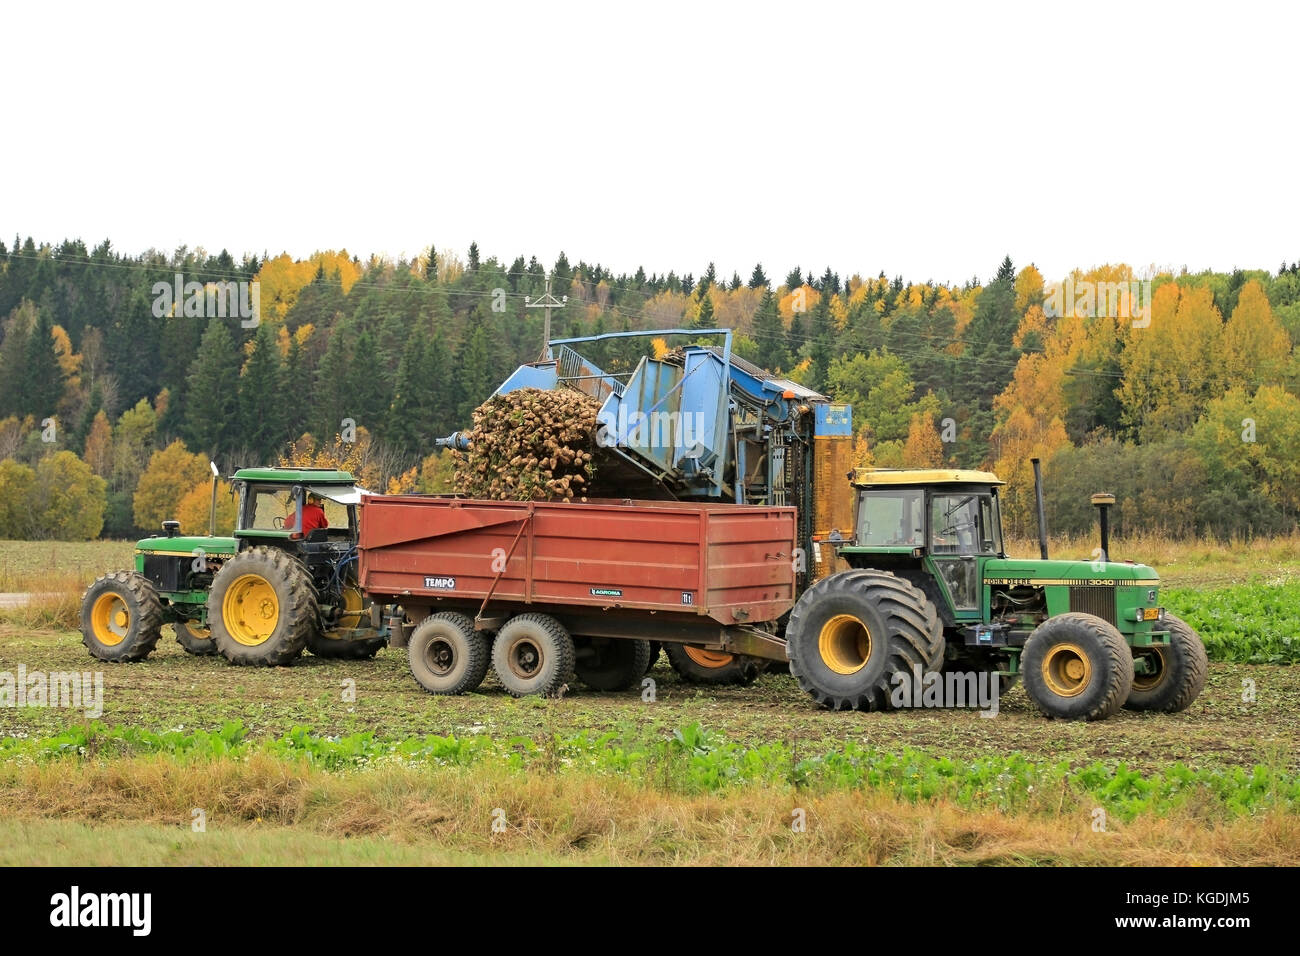 SALO, Finnland - 4. OKTOBER 2015: Unbenannte Landwirt entlädt Zuckerrüben auf John Deere 3040 Traktor Anhänger. In Finnland, die Ernte von Zuckerrüben beginnt Stockfoto